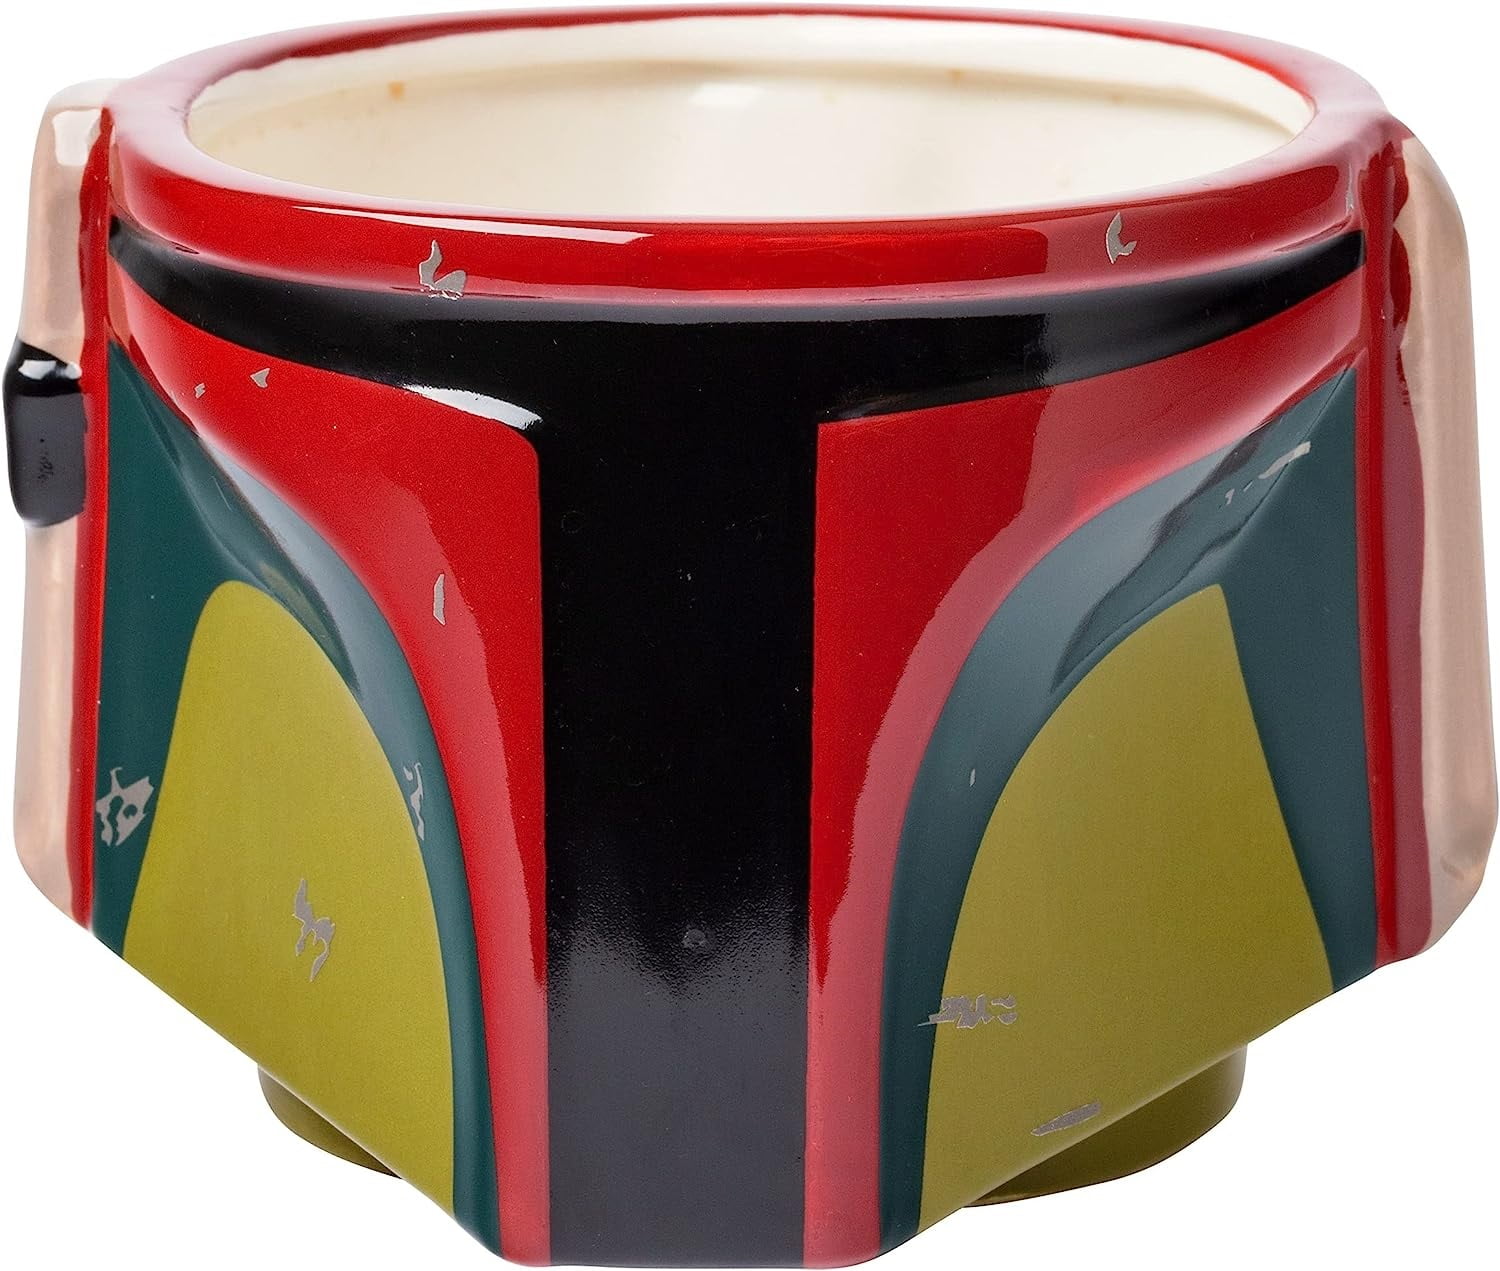 Star Wars Boba Fett Green 20 oz. Jumbo Ceramic Mug